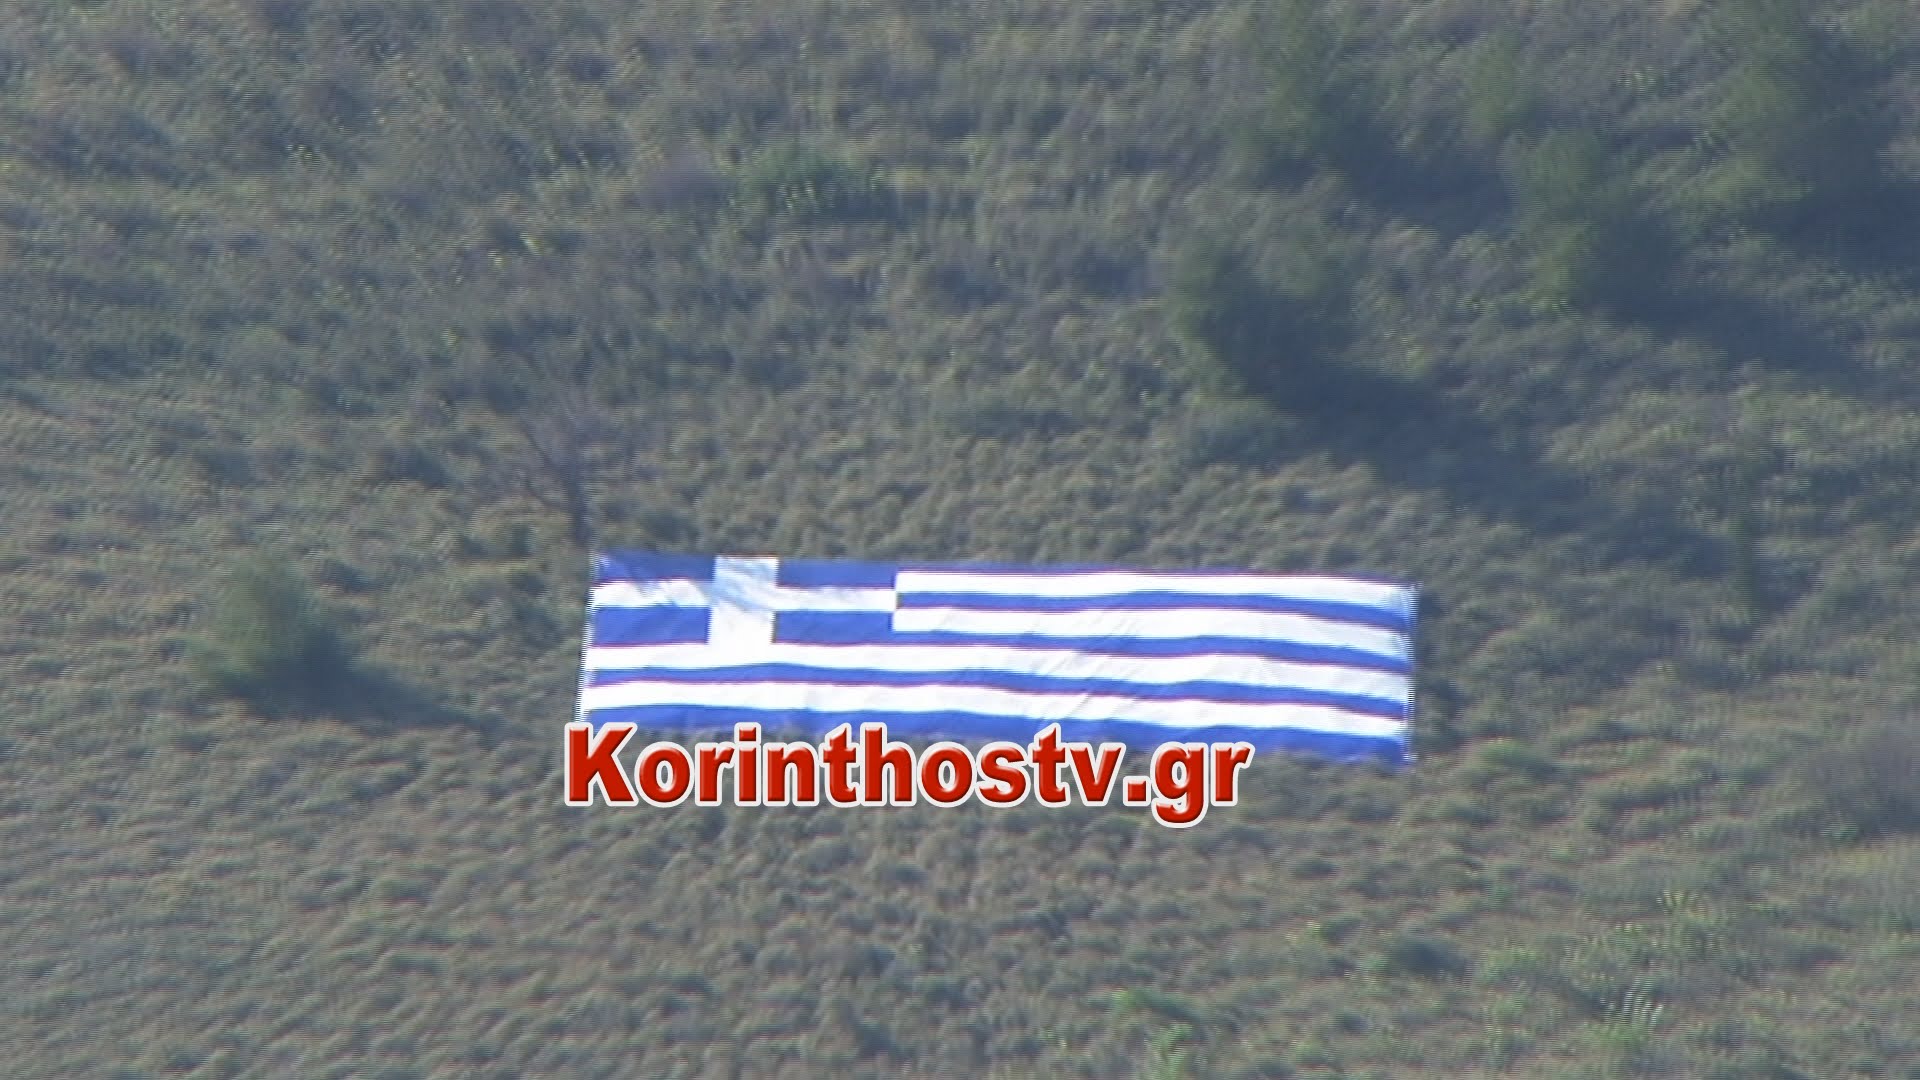 Κορινθία: Η ελληνική σημαία που απλώθηκε στους πρόποδες του Κάστρου της Αρχαίας Κορίνθου (video)